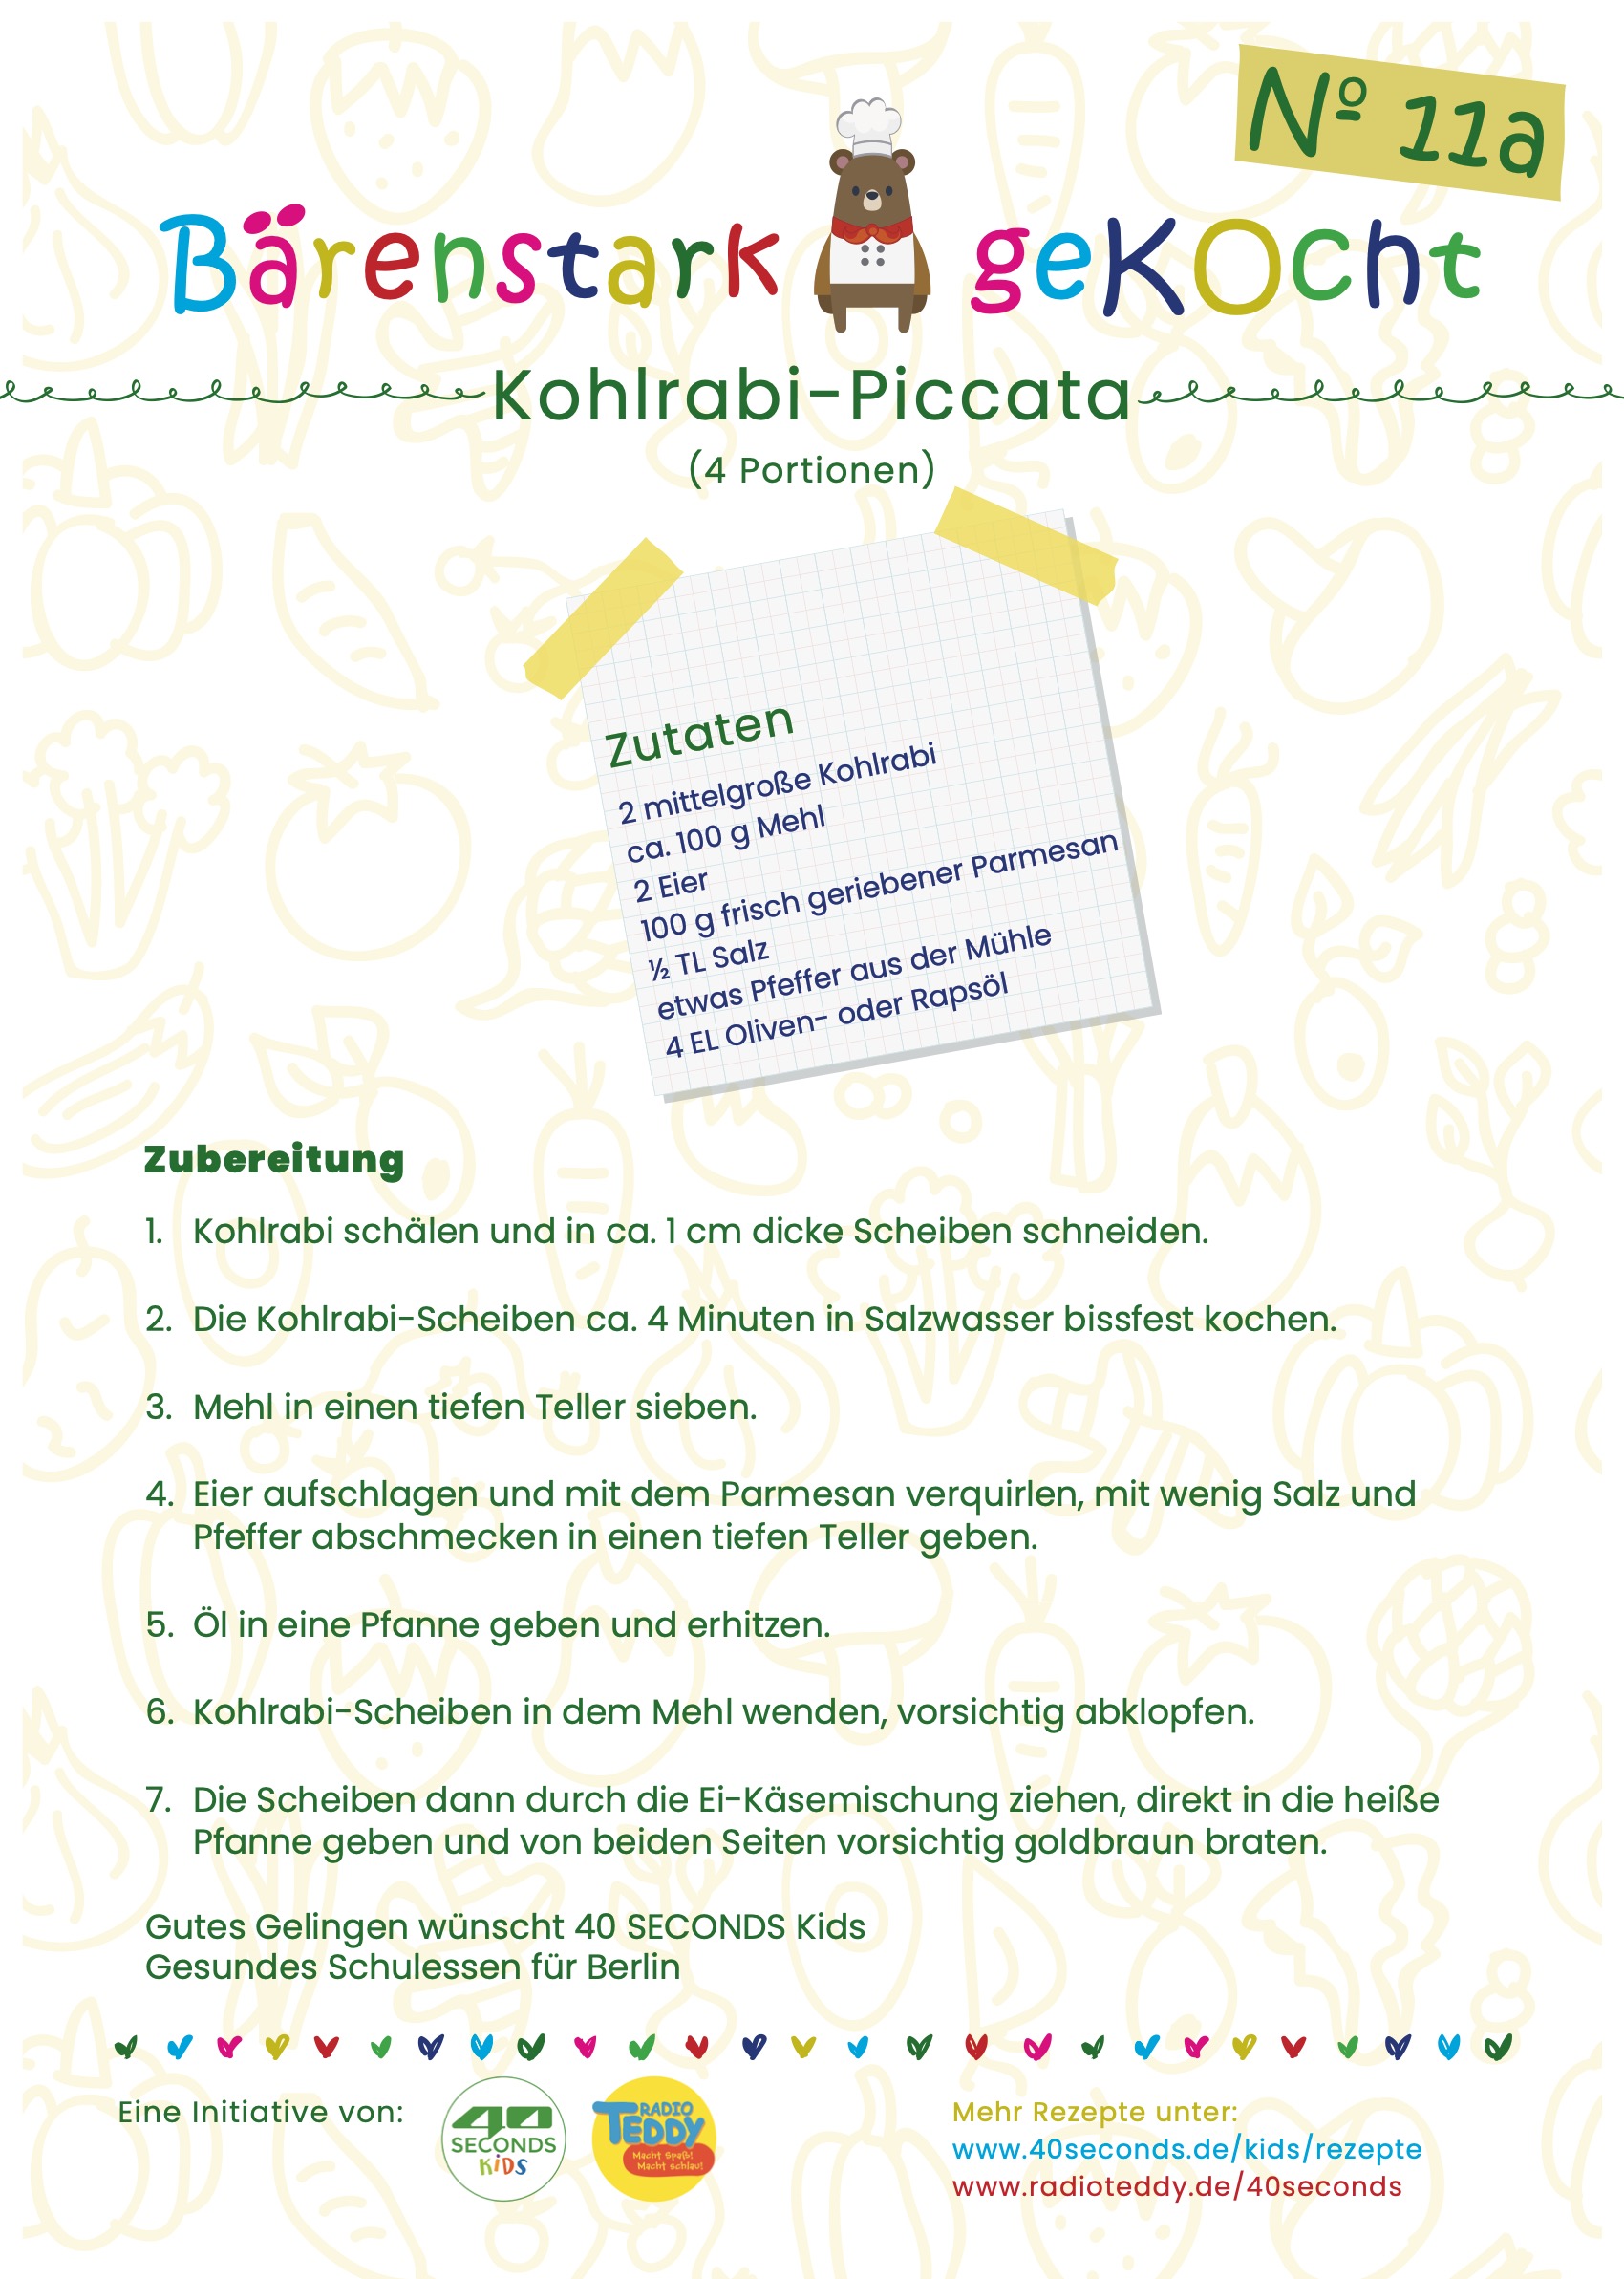 Kohlrabi-Piccata: Kohlrabi-Schnitzel in Käse-Ei-Hülle